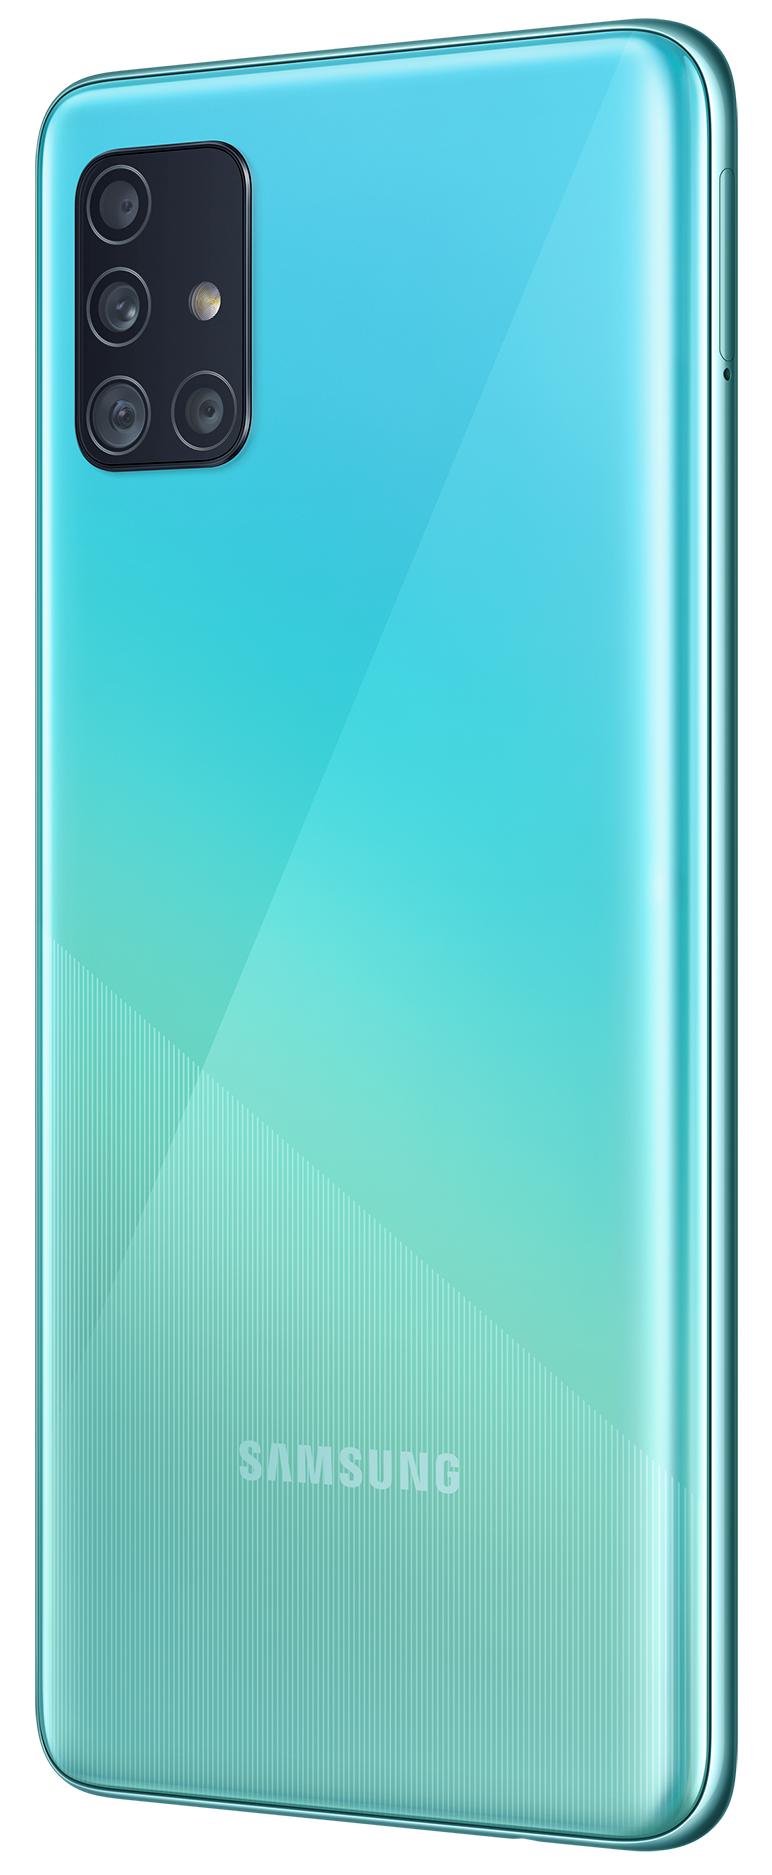 Купить Смартфон Samsung Galaxy A51 2020 A515F 4/64GB Blue ...